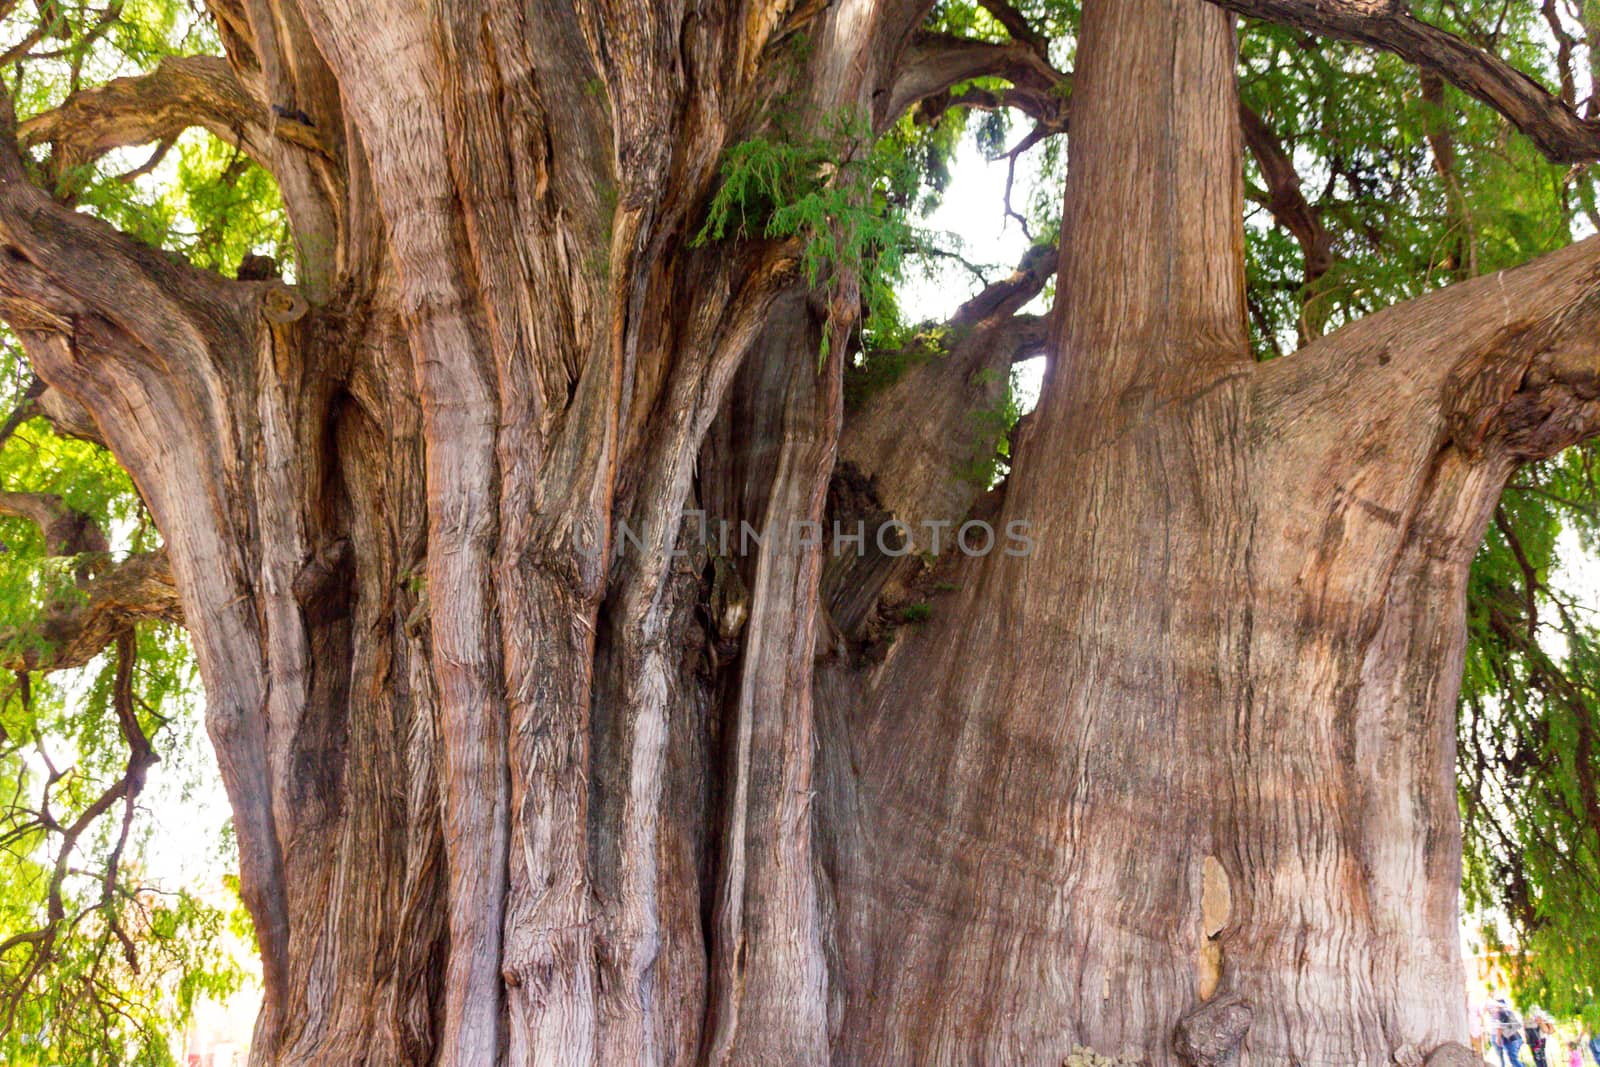 Oaxaca, Oaxaca / Mexico - 21/7/2018: Famous tree of Tule in Oaxaca Mexico